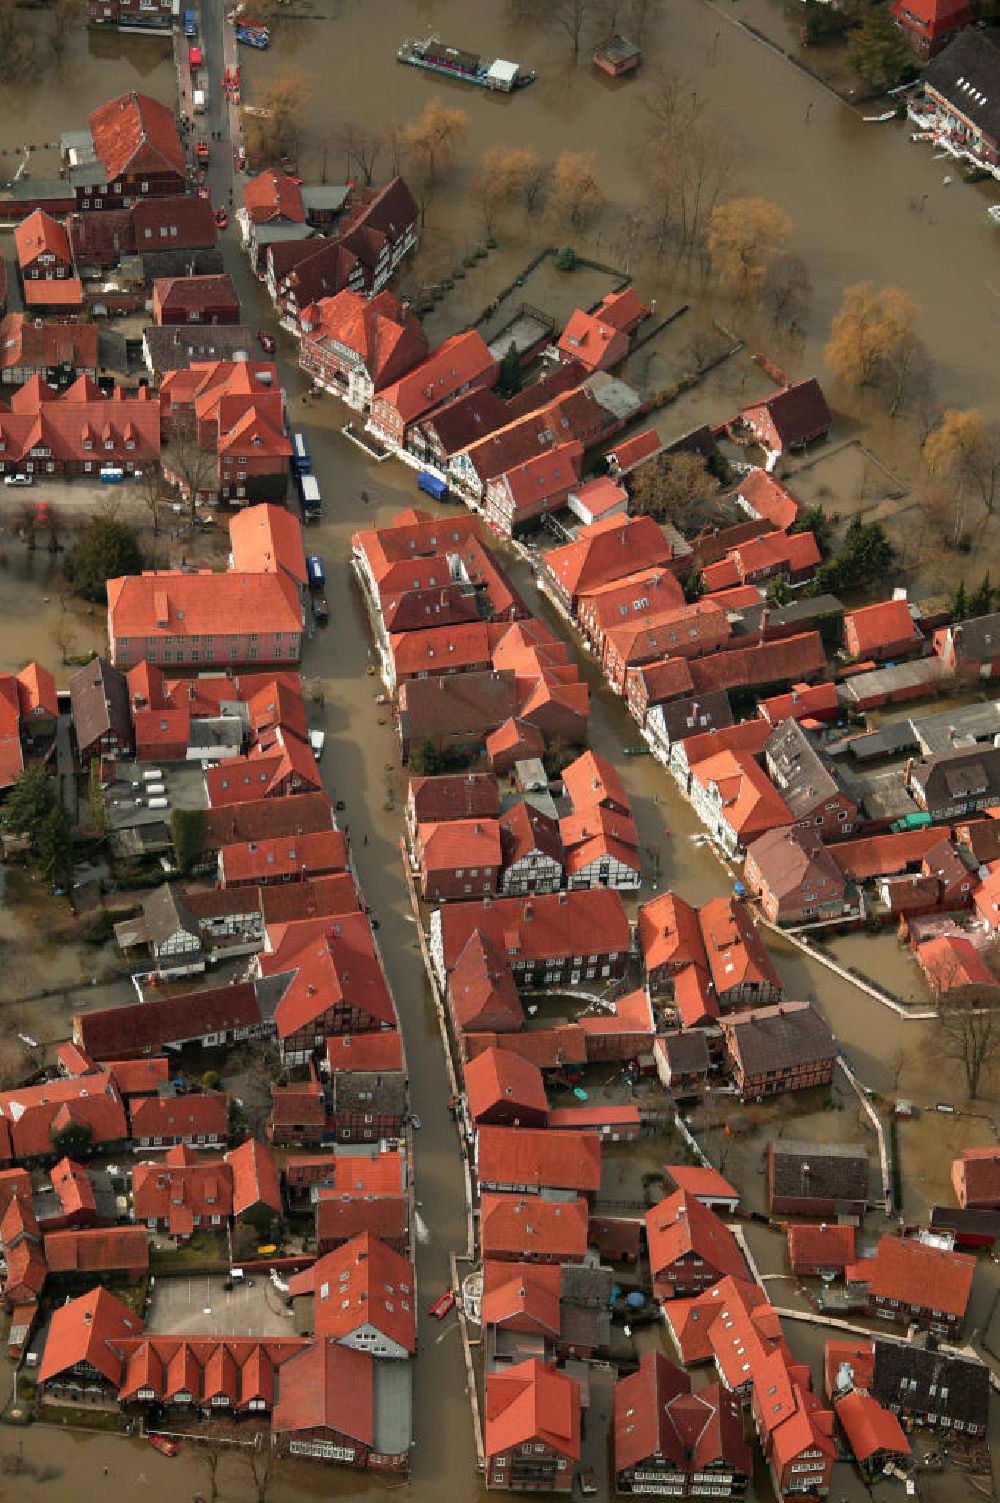 Aerial image Hitzacker - Blick auf das Elbe-Hochwasser bei Hitzacker. Die komplette Altstadt von Hitzacker wurde durch den Fluss überschwemmt. Hier der Blick entlang der Drawehnertorstraße welche zur Straße Am Markt und dann zur Hauptstraße wird, sowie die parallel führende Elbstraße.